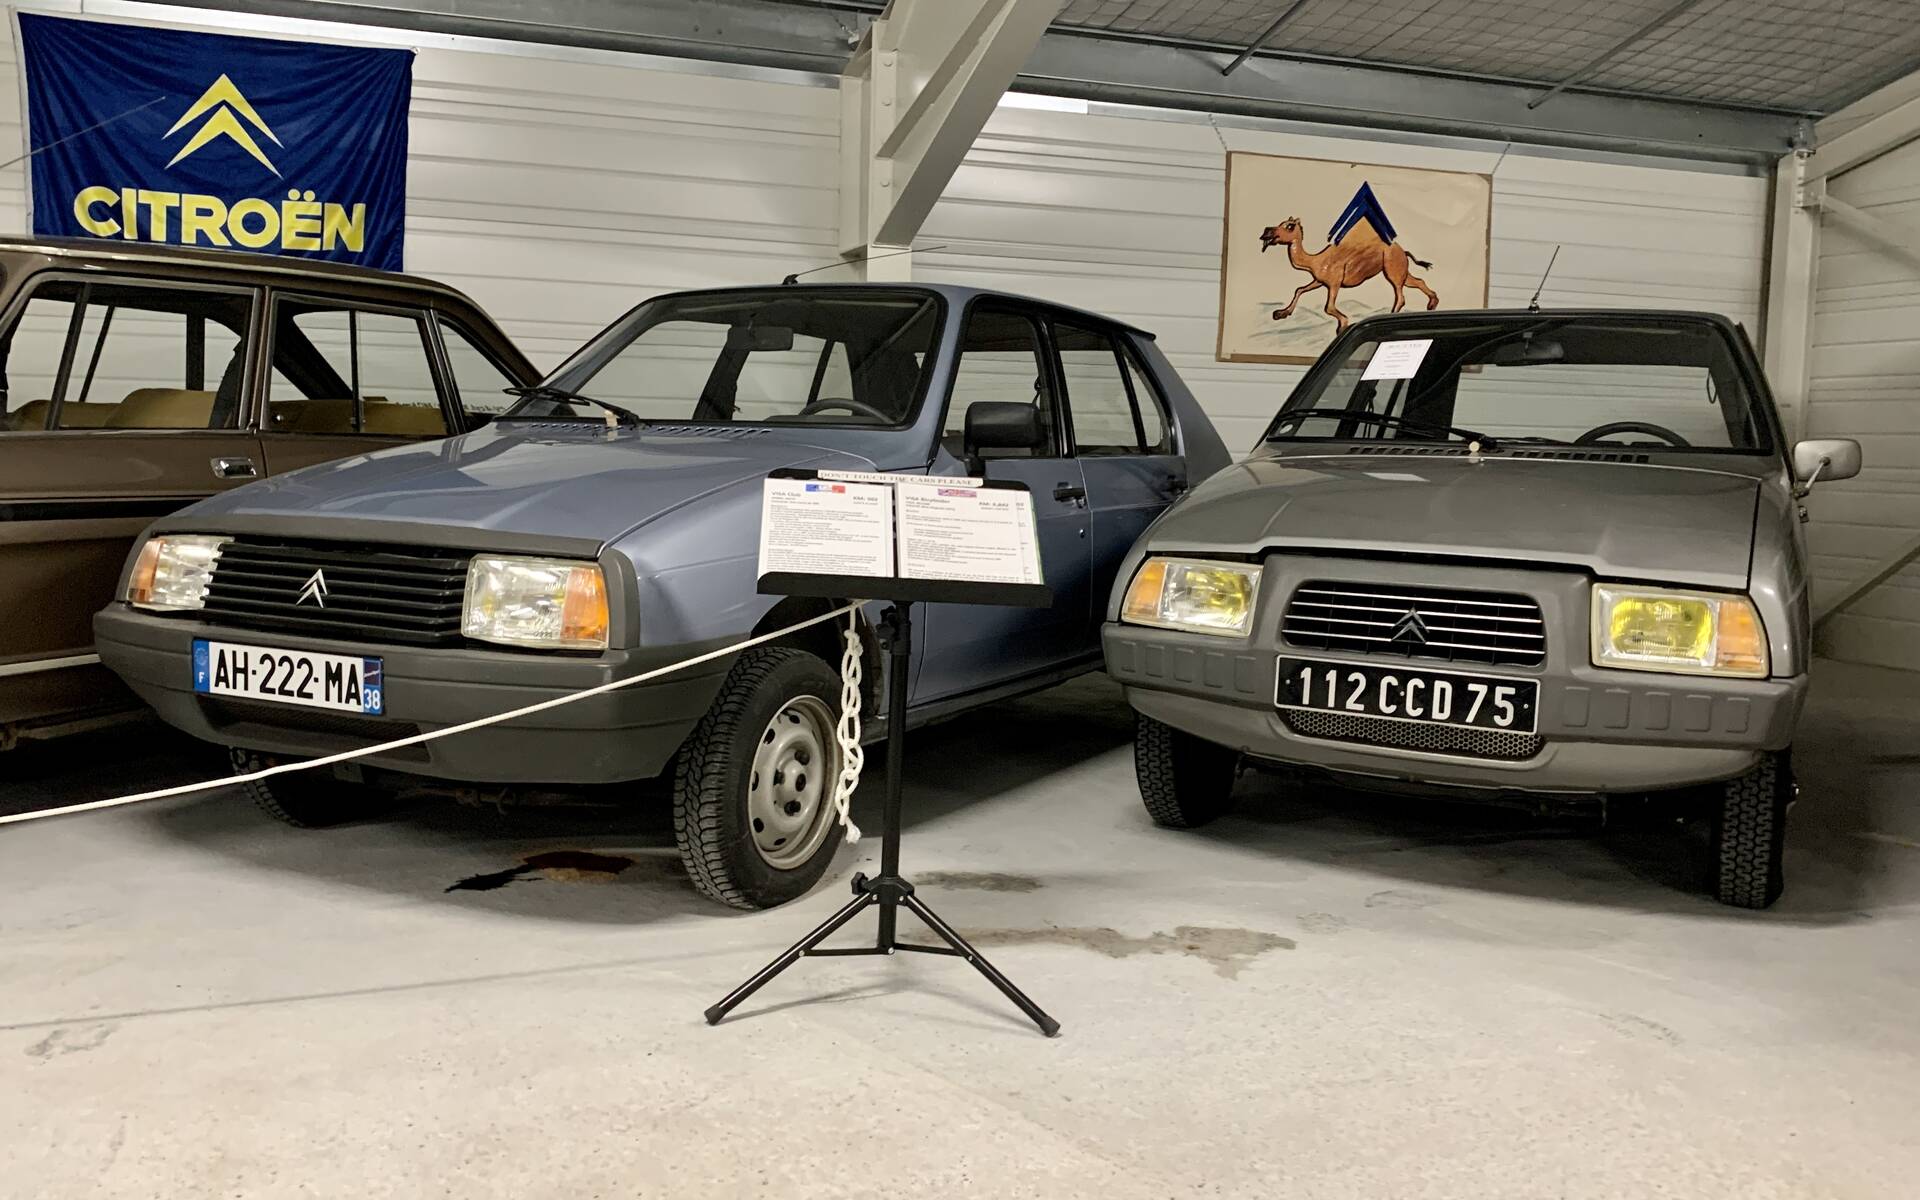 Photos: plus de 100 Citroën d'exception réunies dans un musée en France 543139-photos-plus-de-100-citroen-d-exception-reunies-dans-un-musee-en-france